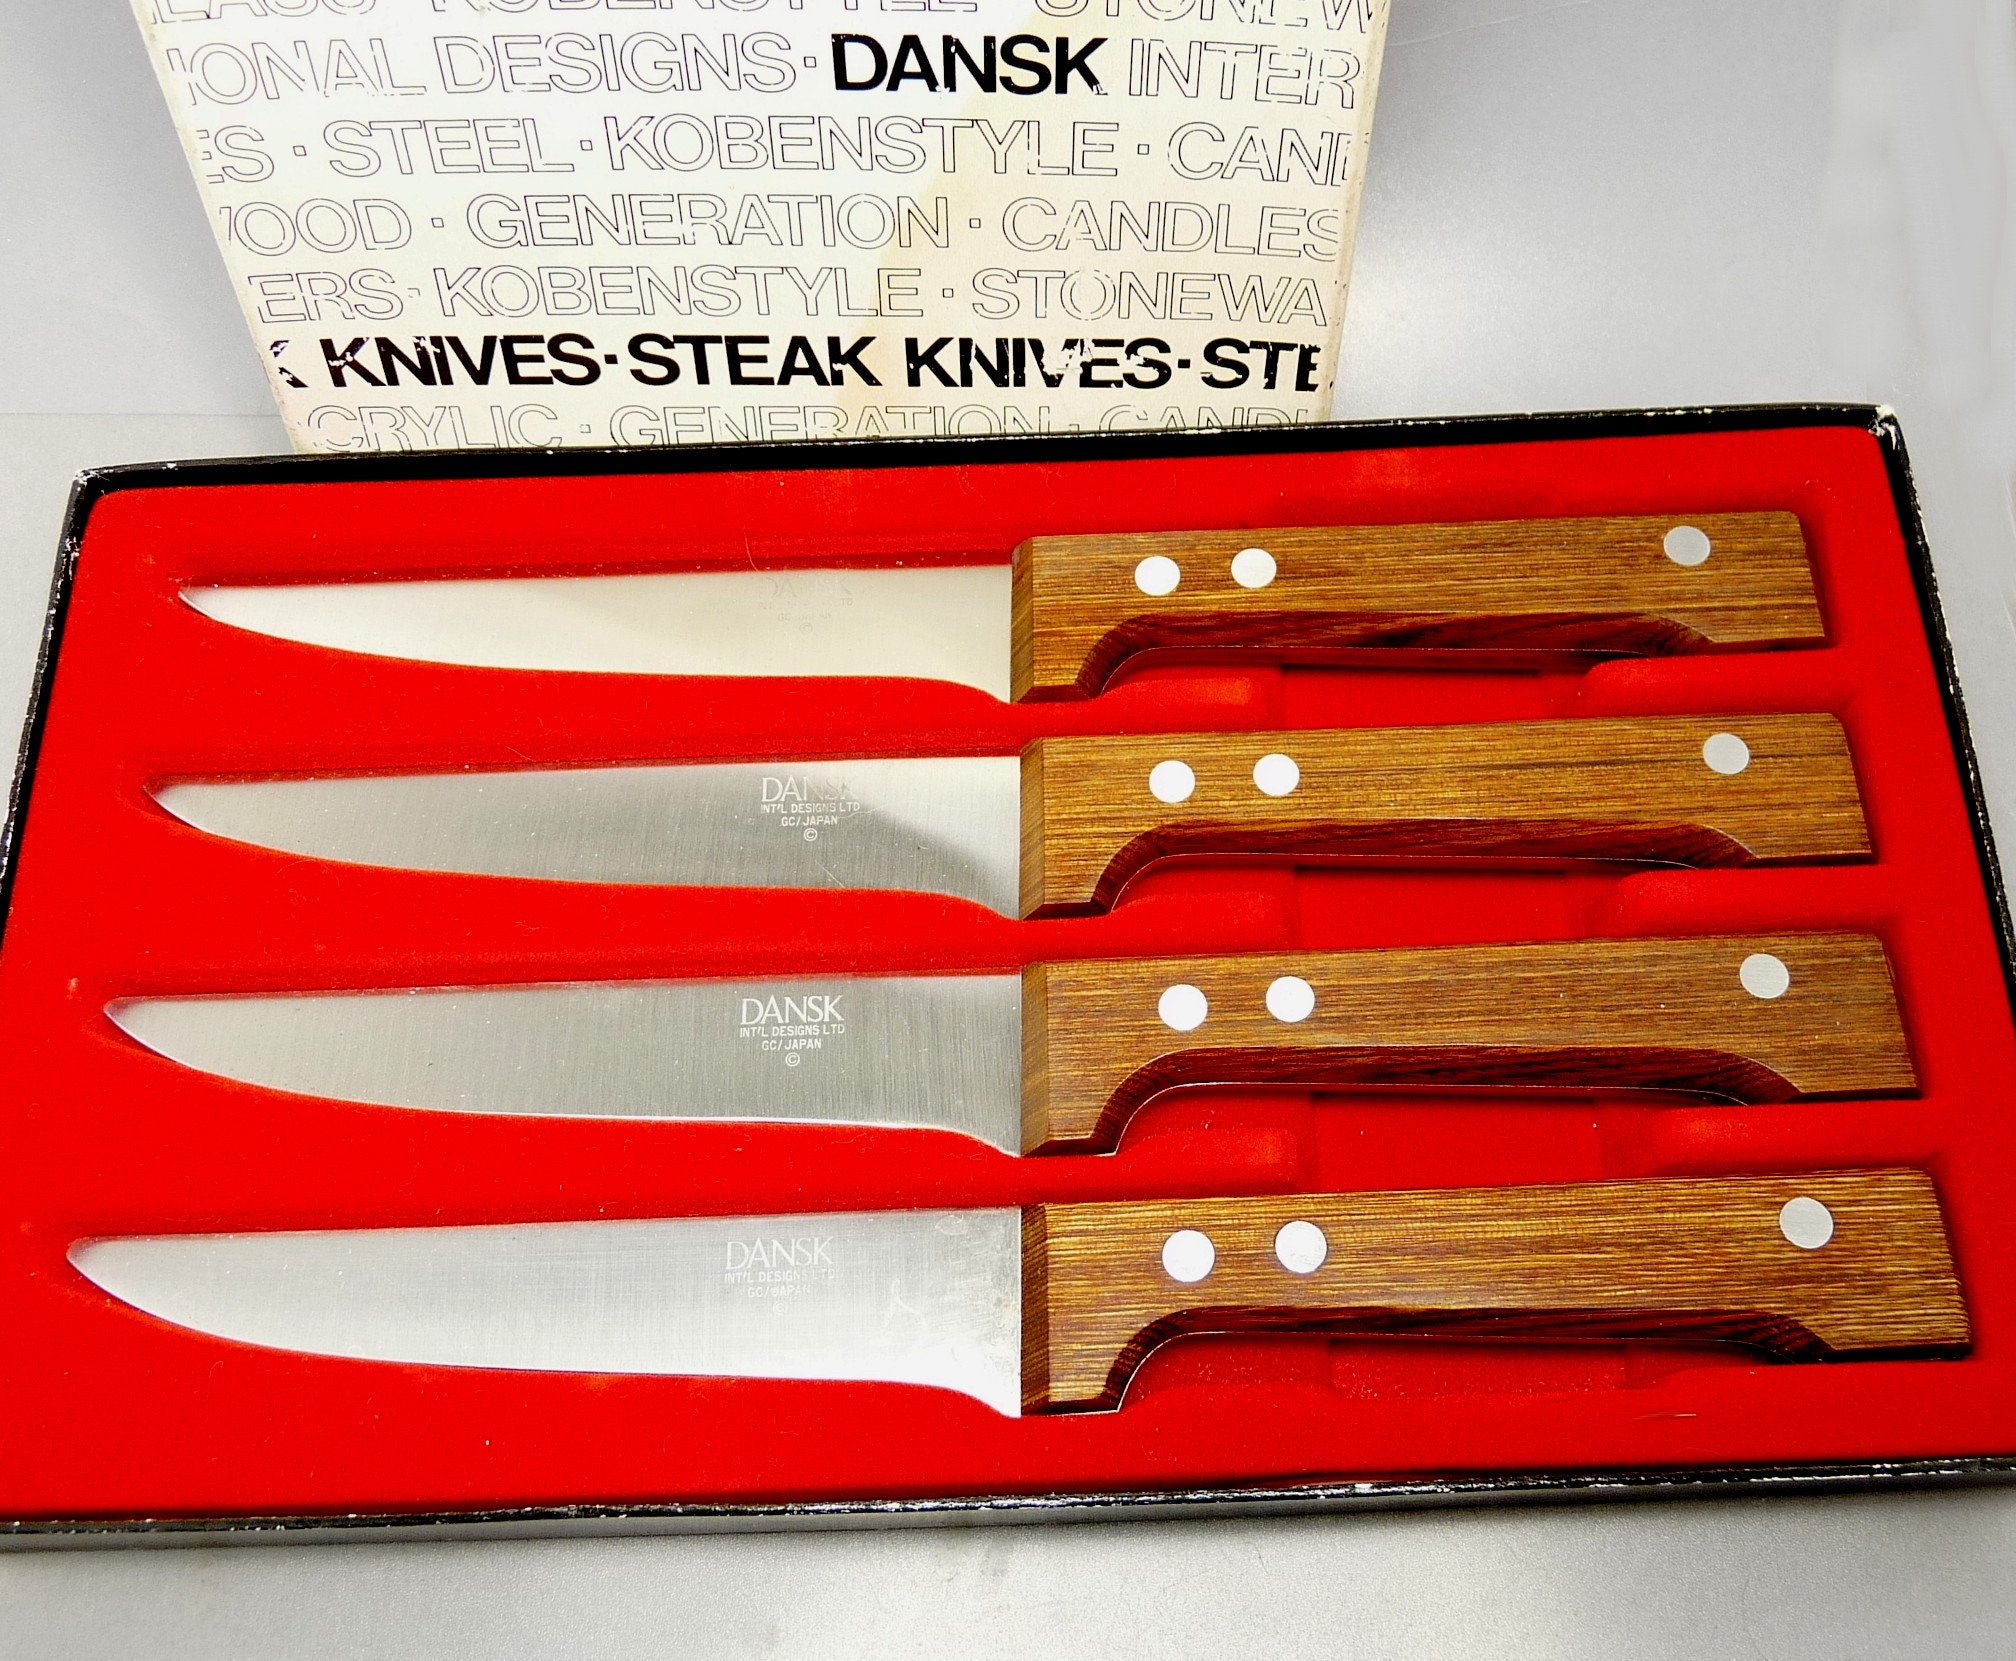 Ingen måde bringe handlingen At øge Vintage MCM Dansk Designs Steak Knife Set in Box New Old Stock - Etsy